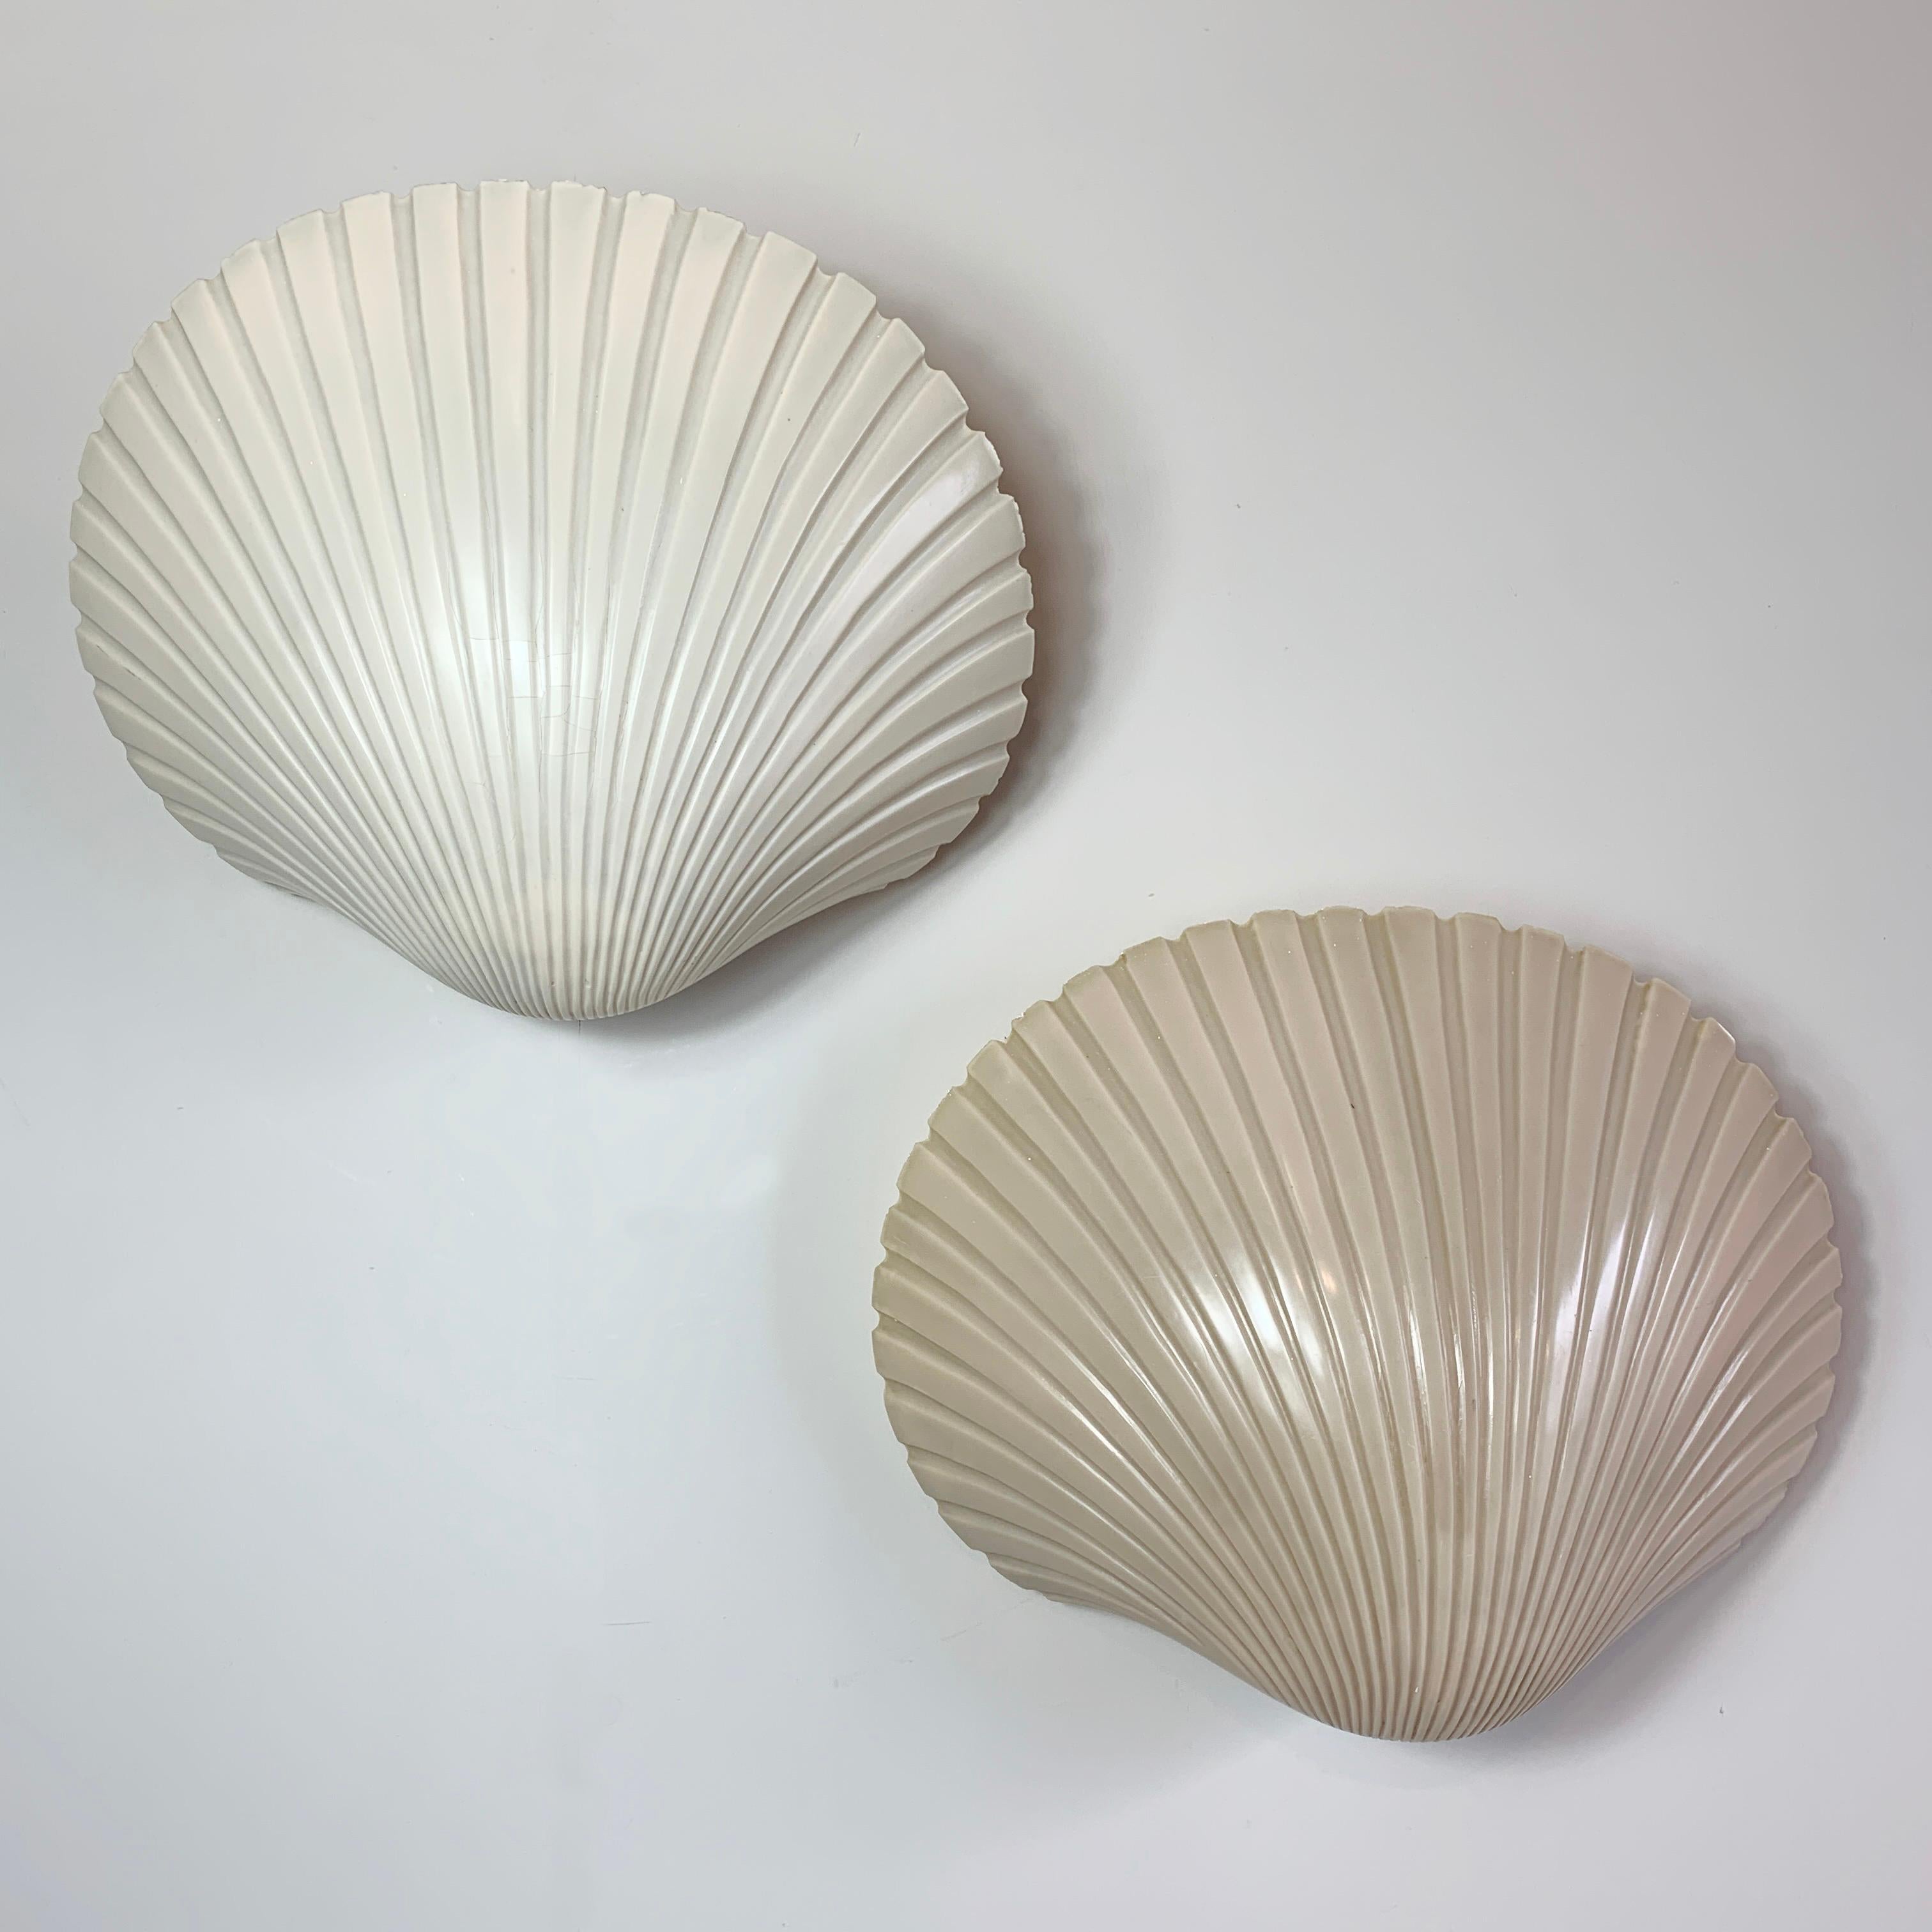 Magnifique paire d'appliques en forme de coquillages de Michèle Mahé et André Cazenave pour l'Atelier A, datant de la fin des années 1960. Le magnifique design organique est réalisé en fibre de verre.

Chaque lampe est unique et présente des